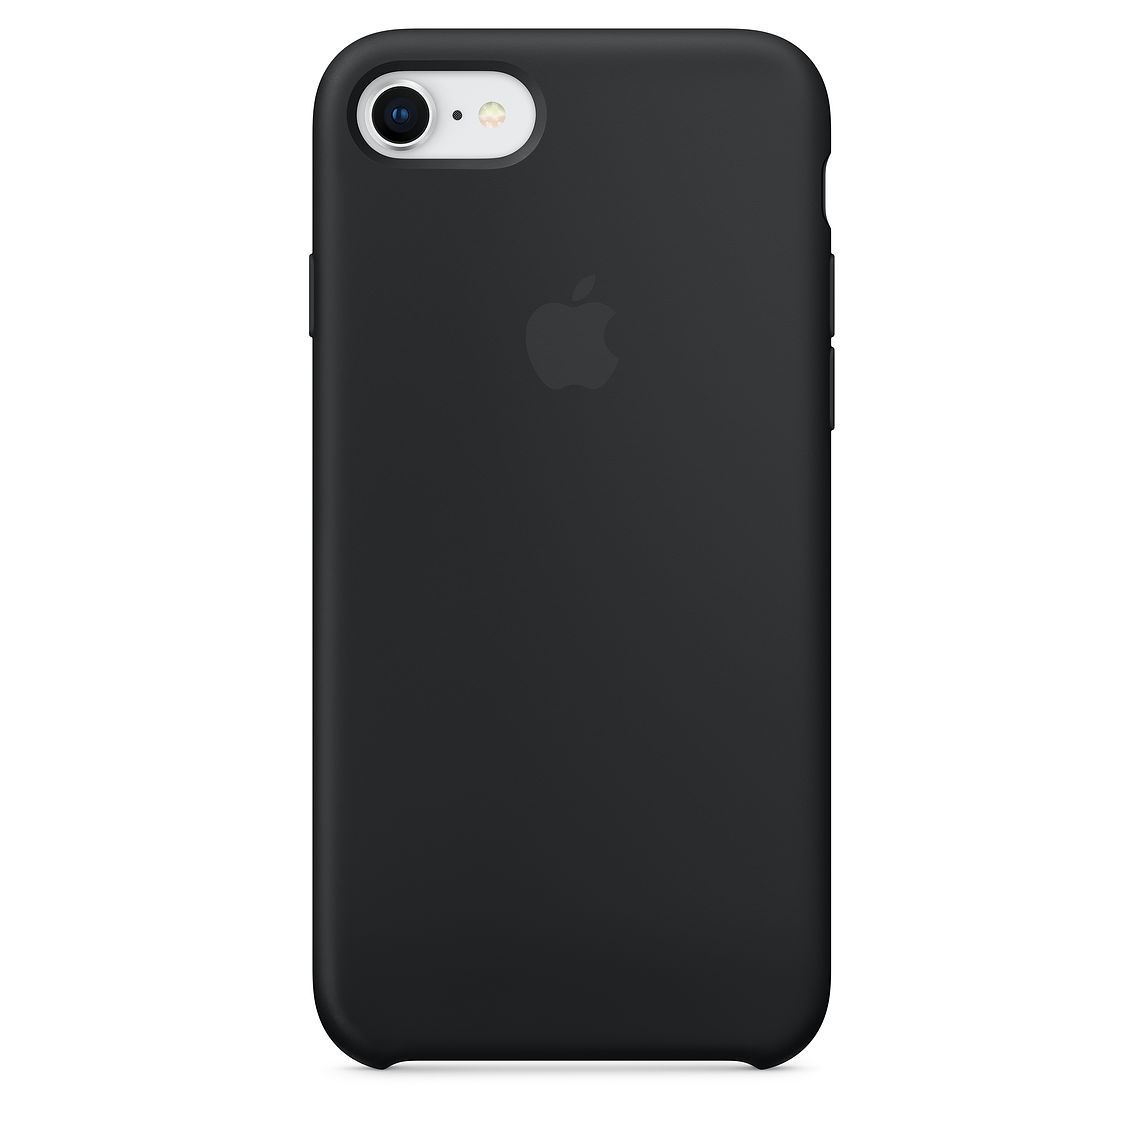 coque iphone 5 apple noir